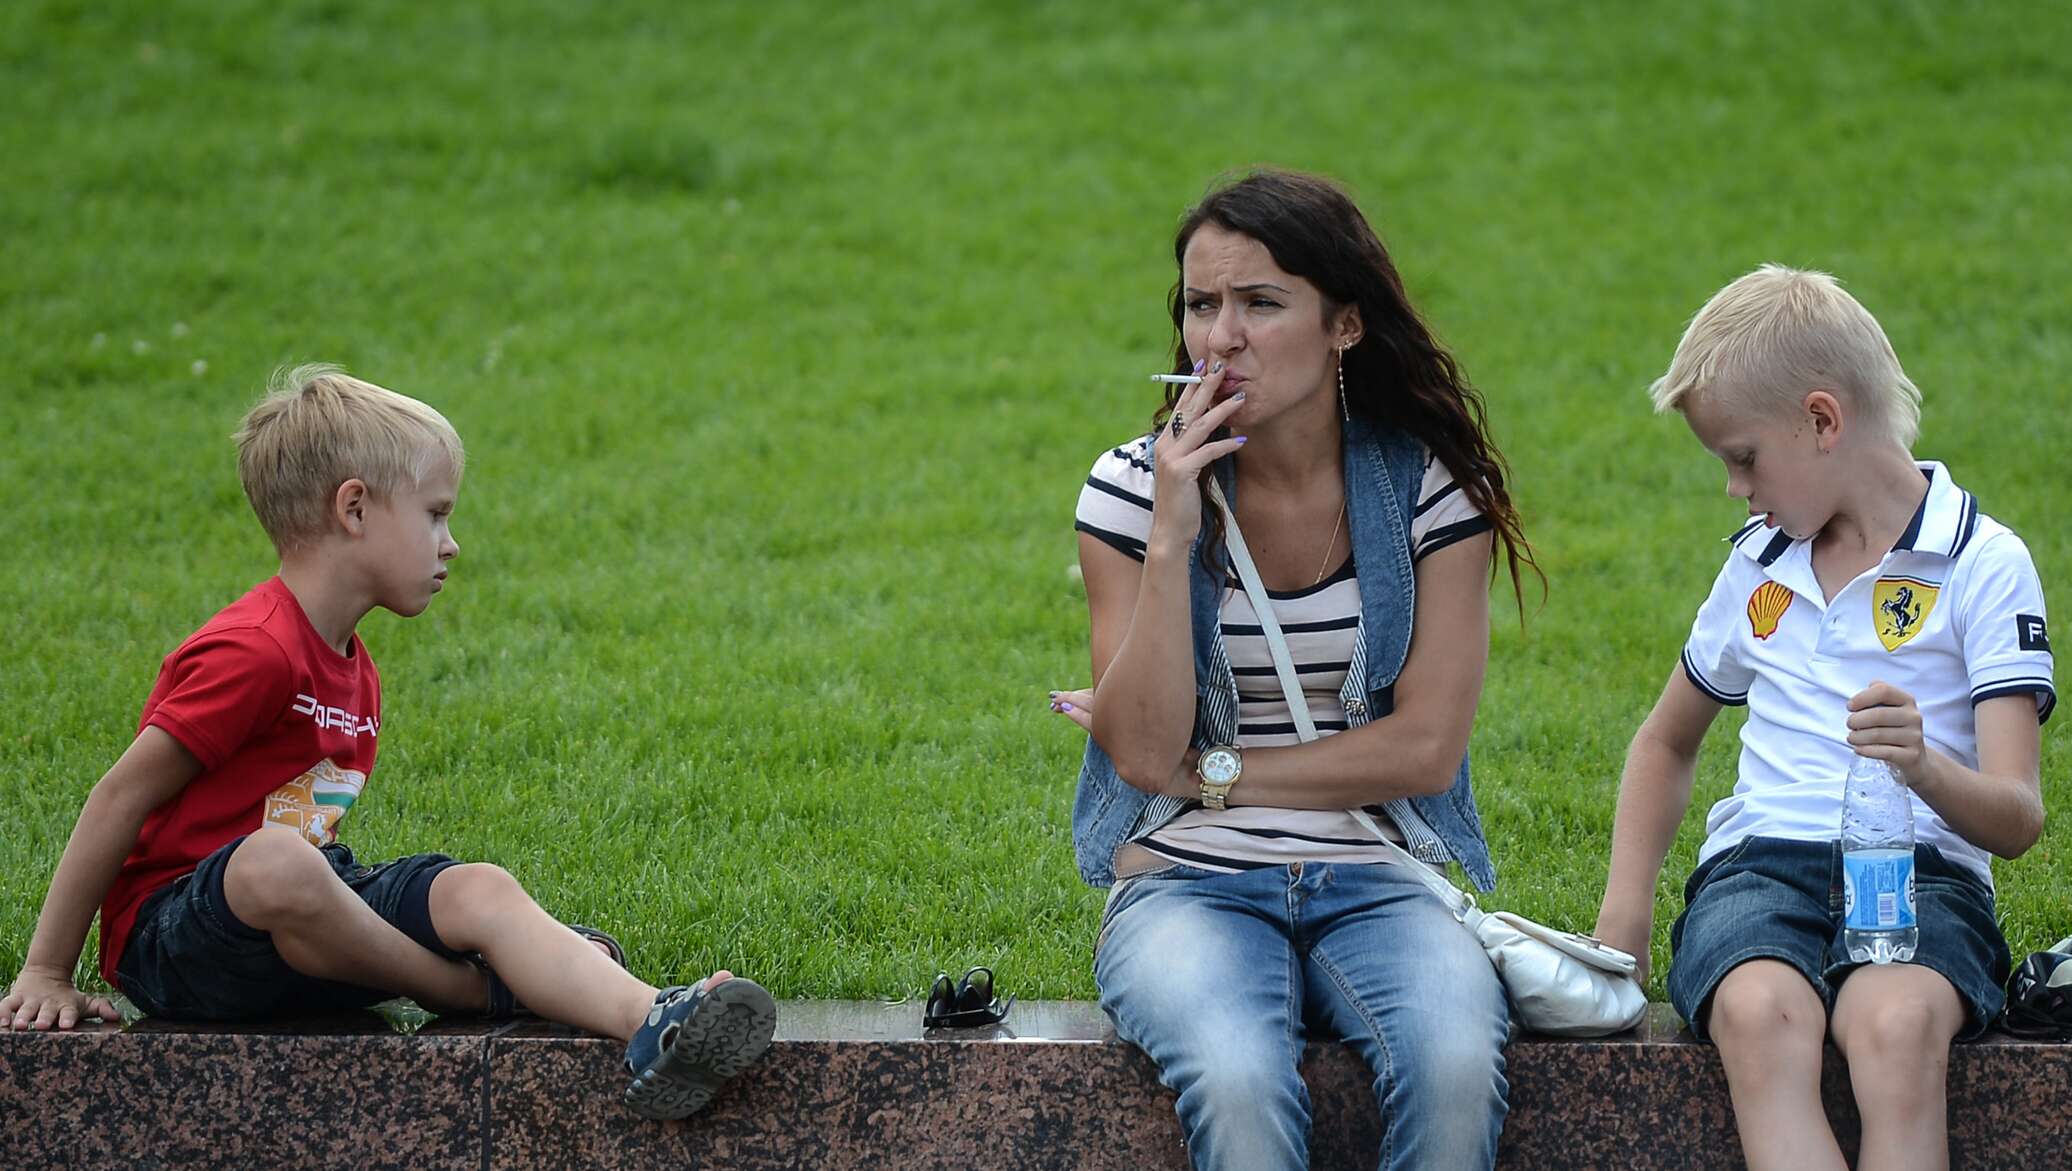 Мамы без на улице. Курящая мама с ребенком. Курение рядом с детьми. Родители с детьми на детской площадке.